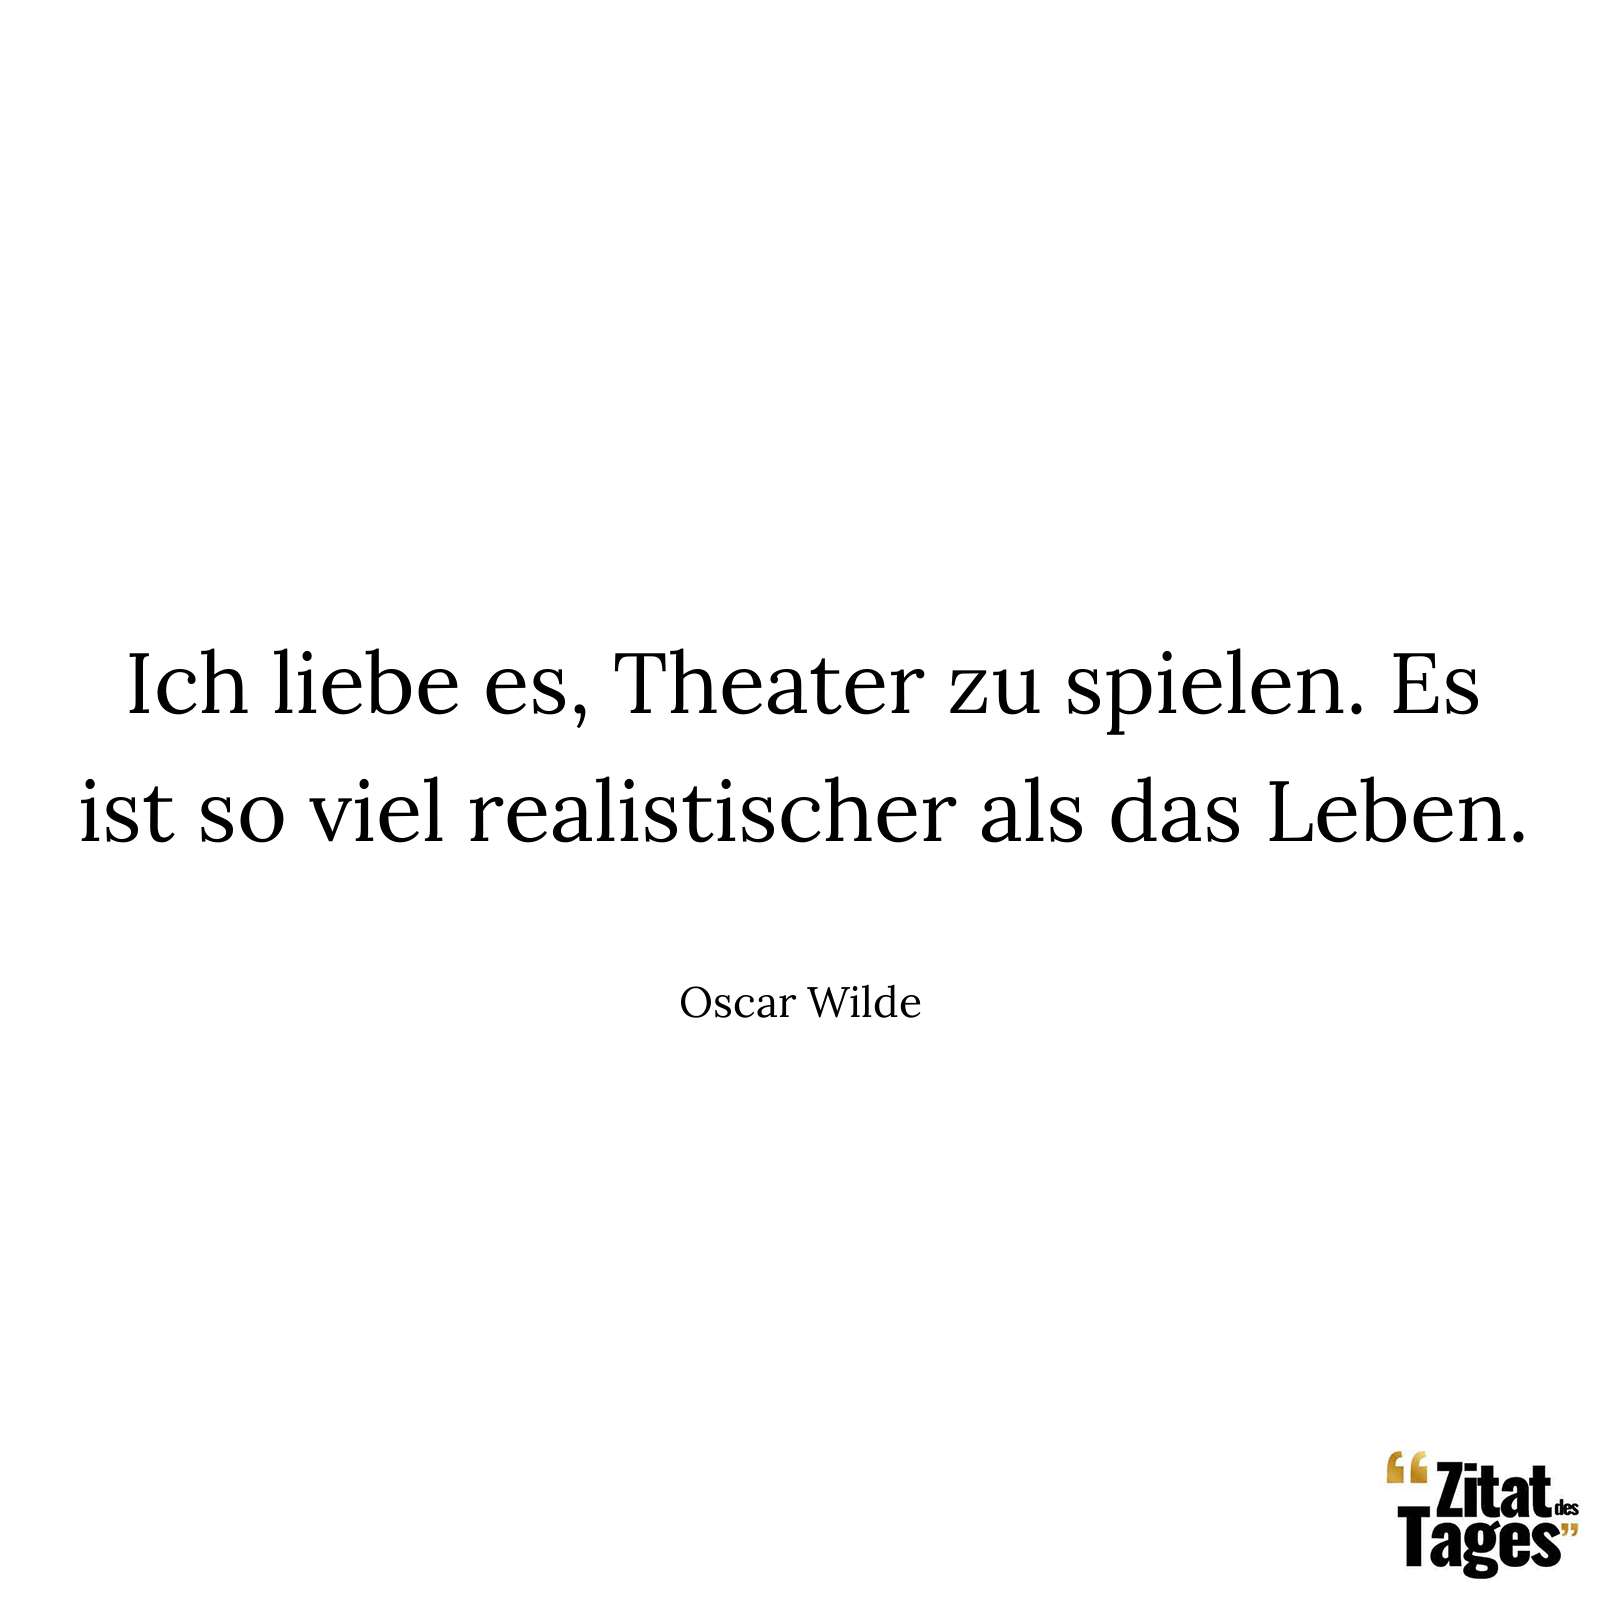 Ich liebe es, Theater zu spielen. Es ist so viel realistischer als das Leben. - Oscar Wilde